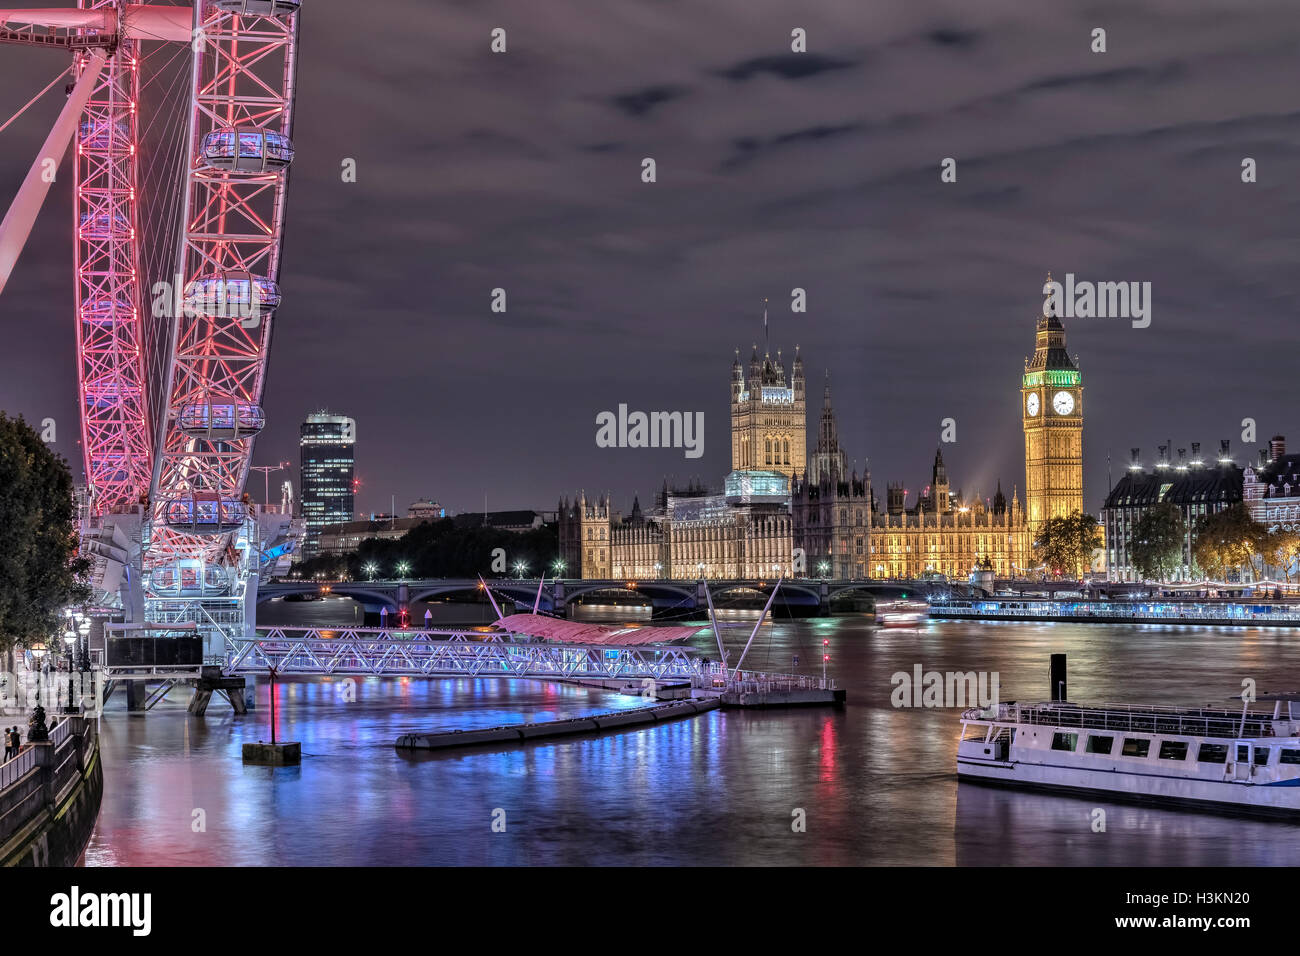 Westminster, Big Ben, London Eye, London, England, UK Stock Photo